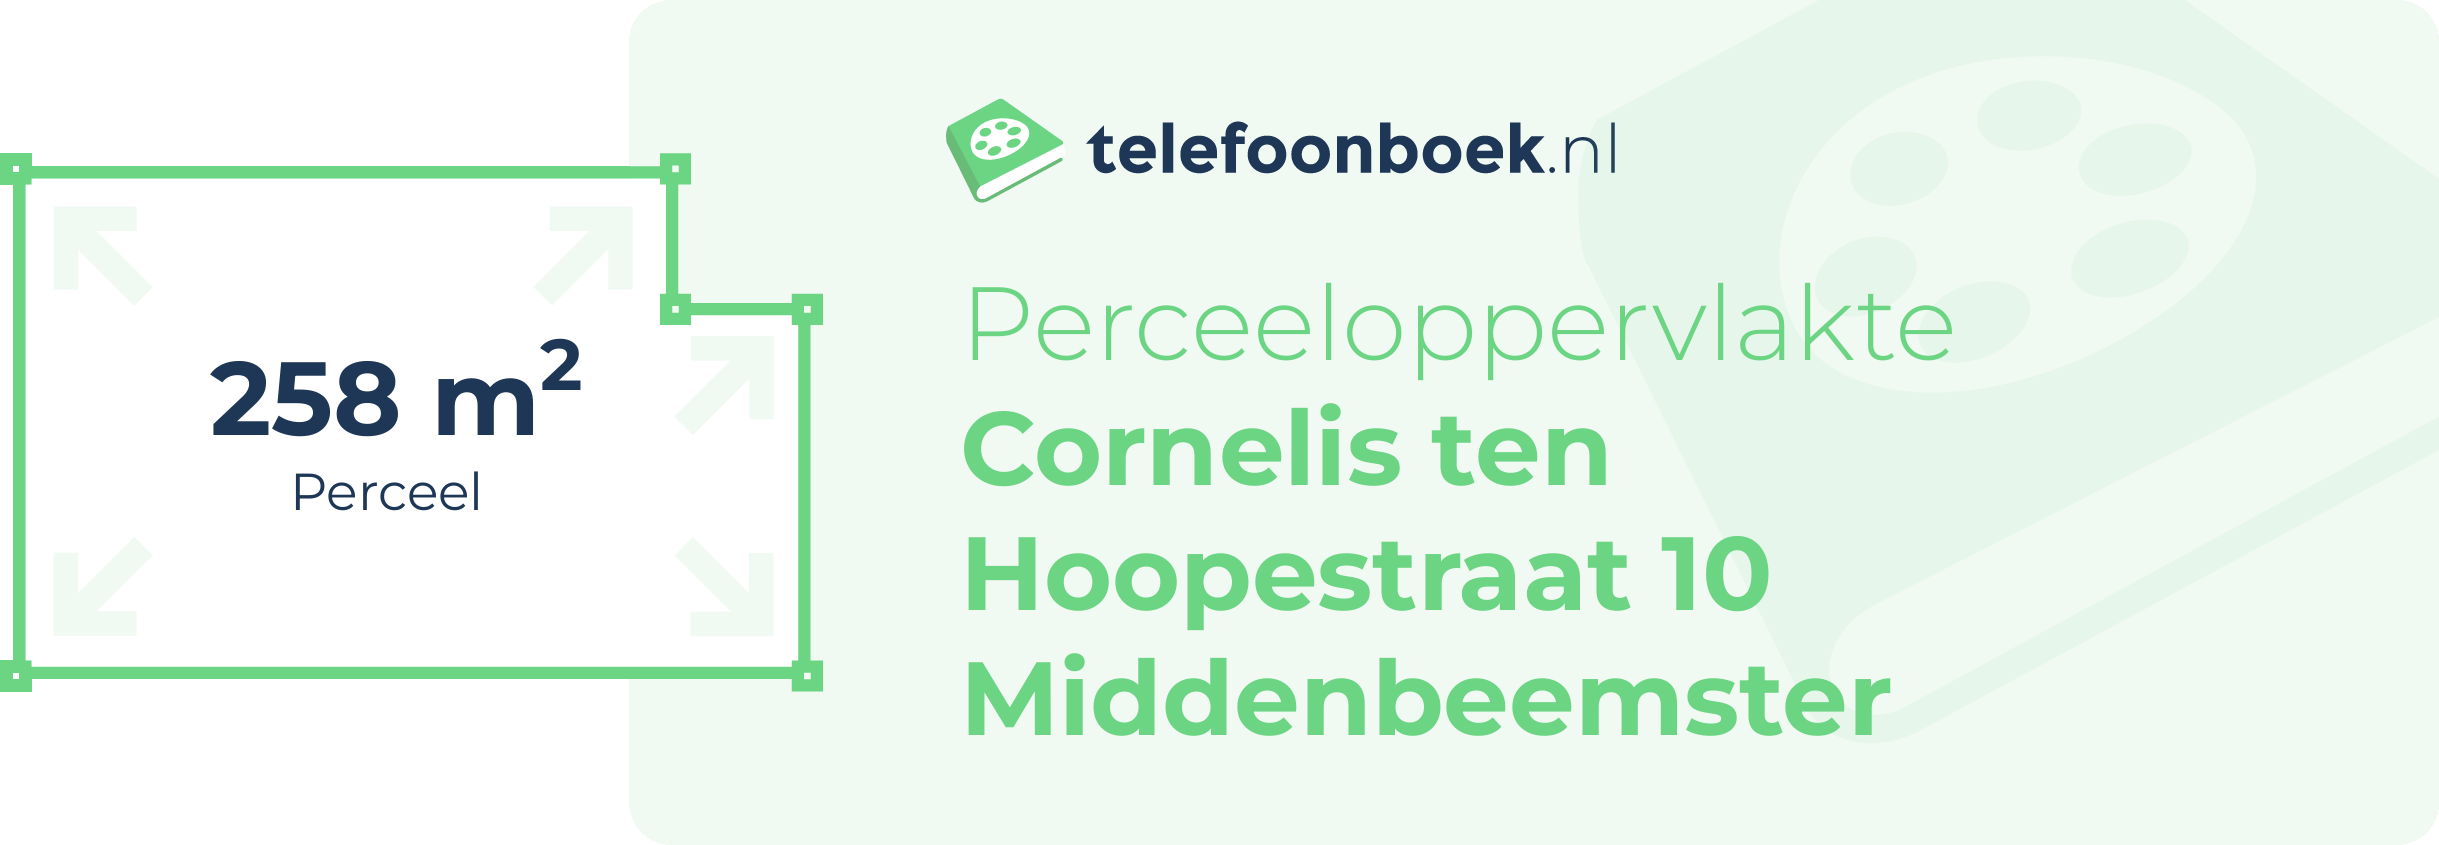 Perceeloppervlakte Cornelis Ten Hoopestraat 10 Middenbeemster